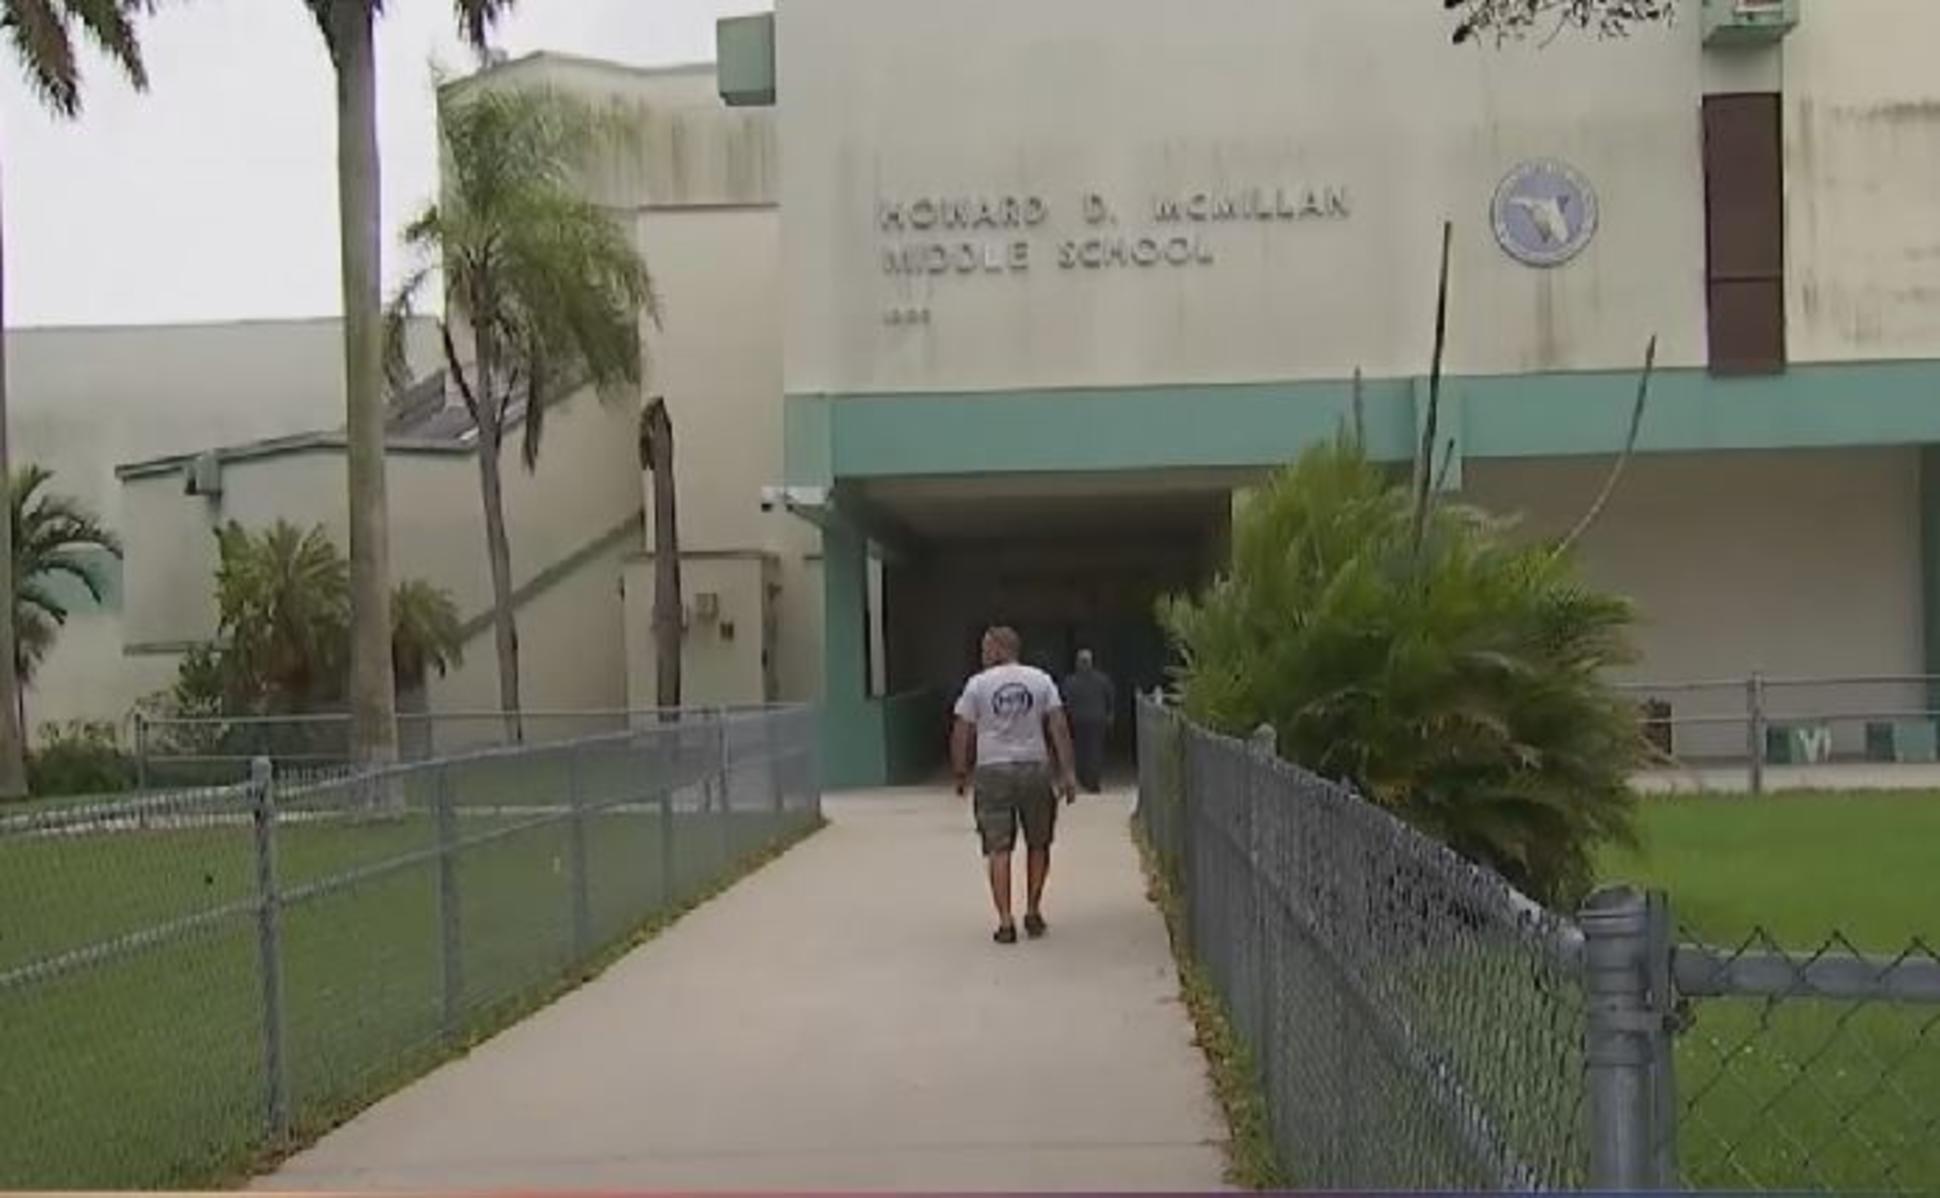 Adolescente acusado de amenazar escuela secundaria tendrá detención domiciliaria en Florida